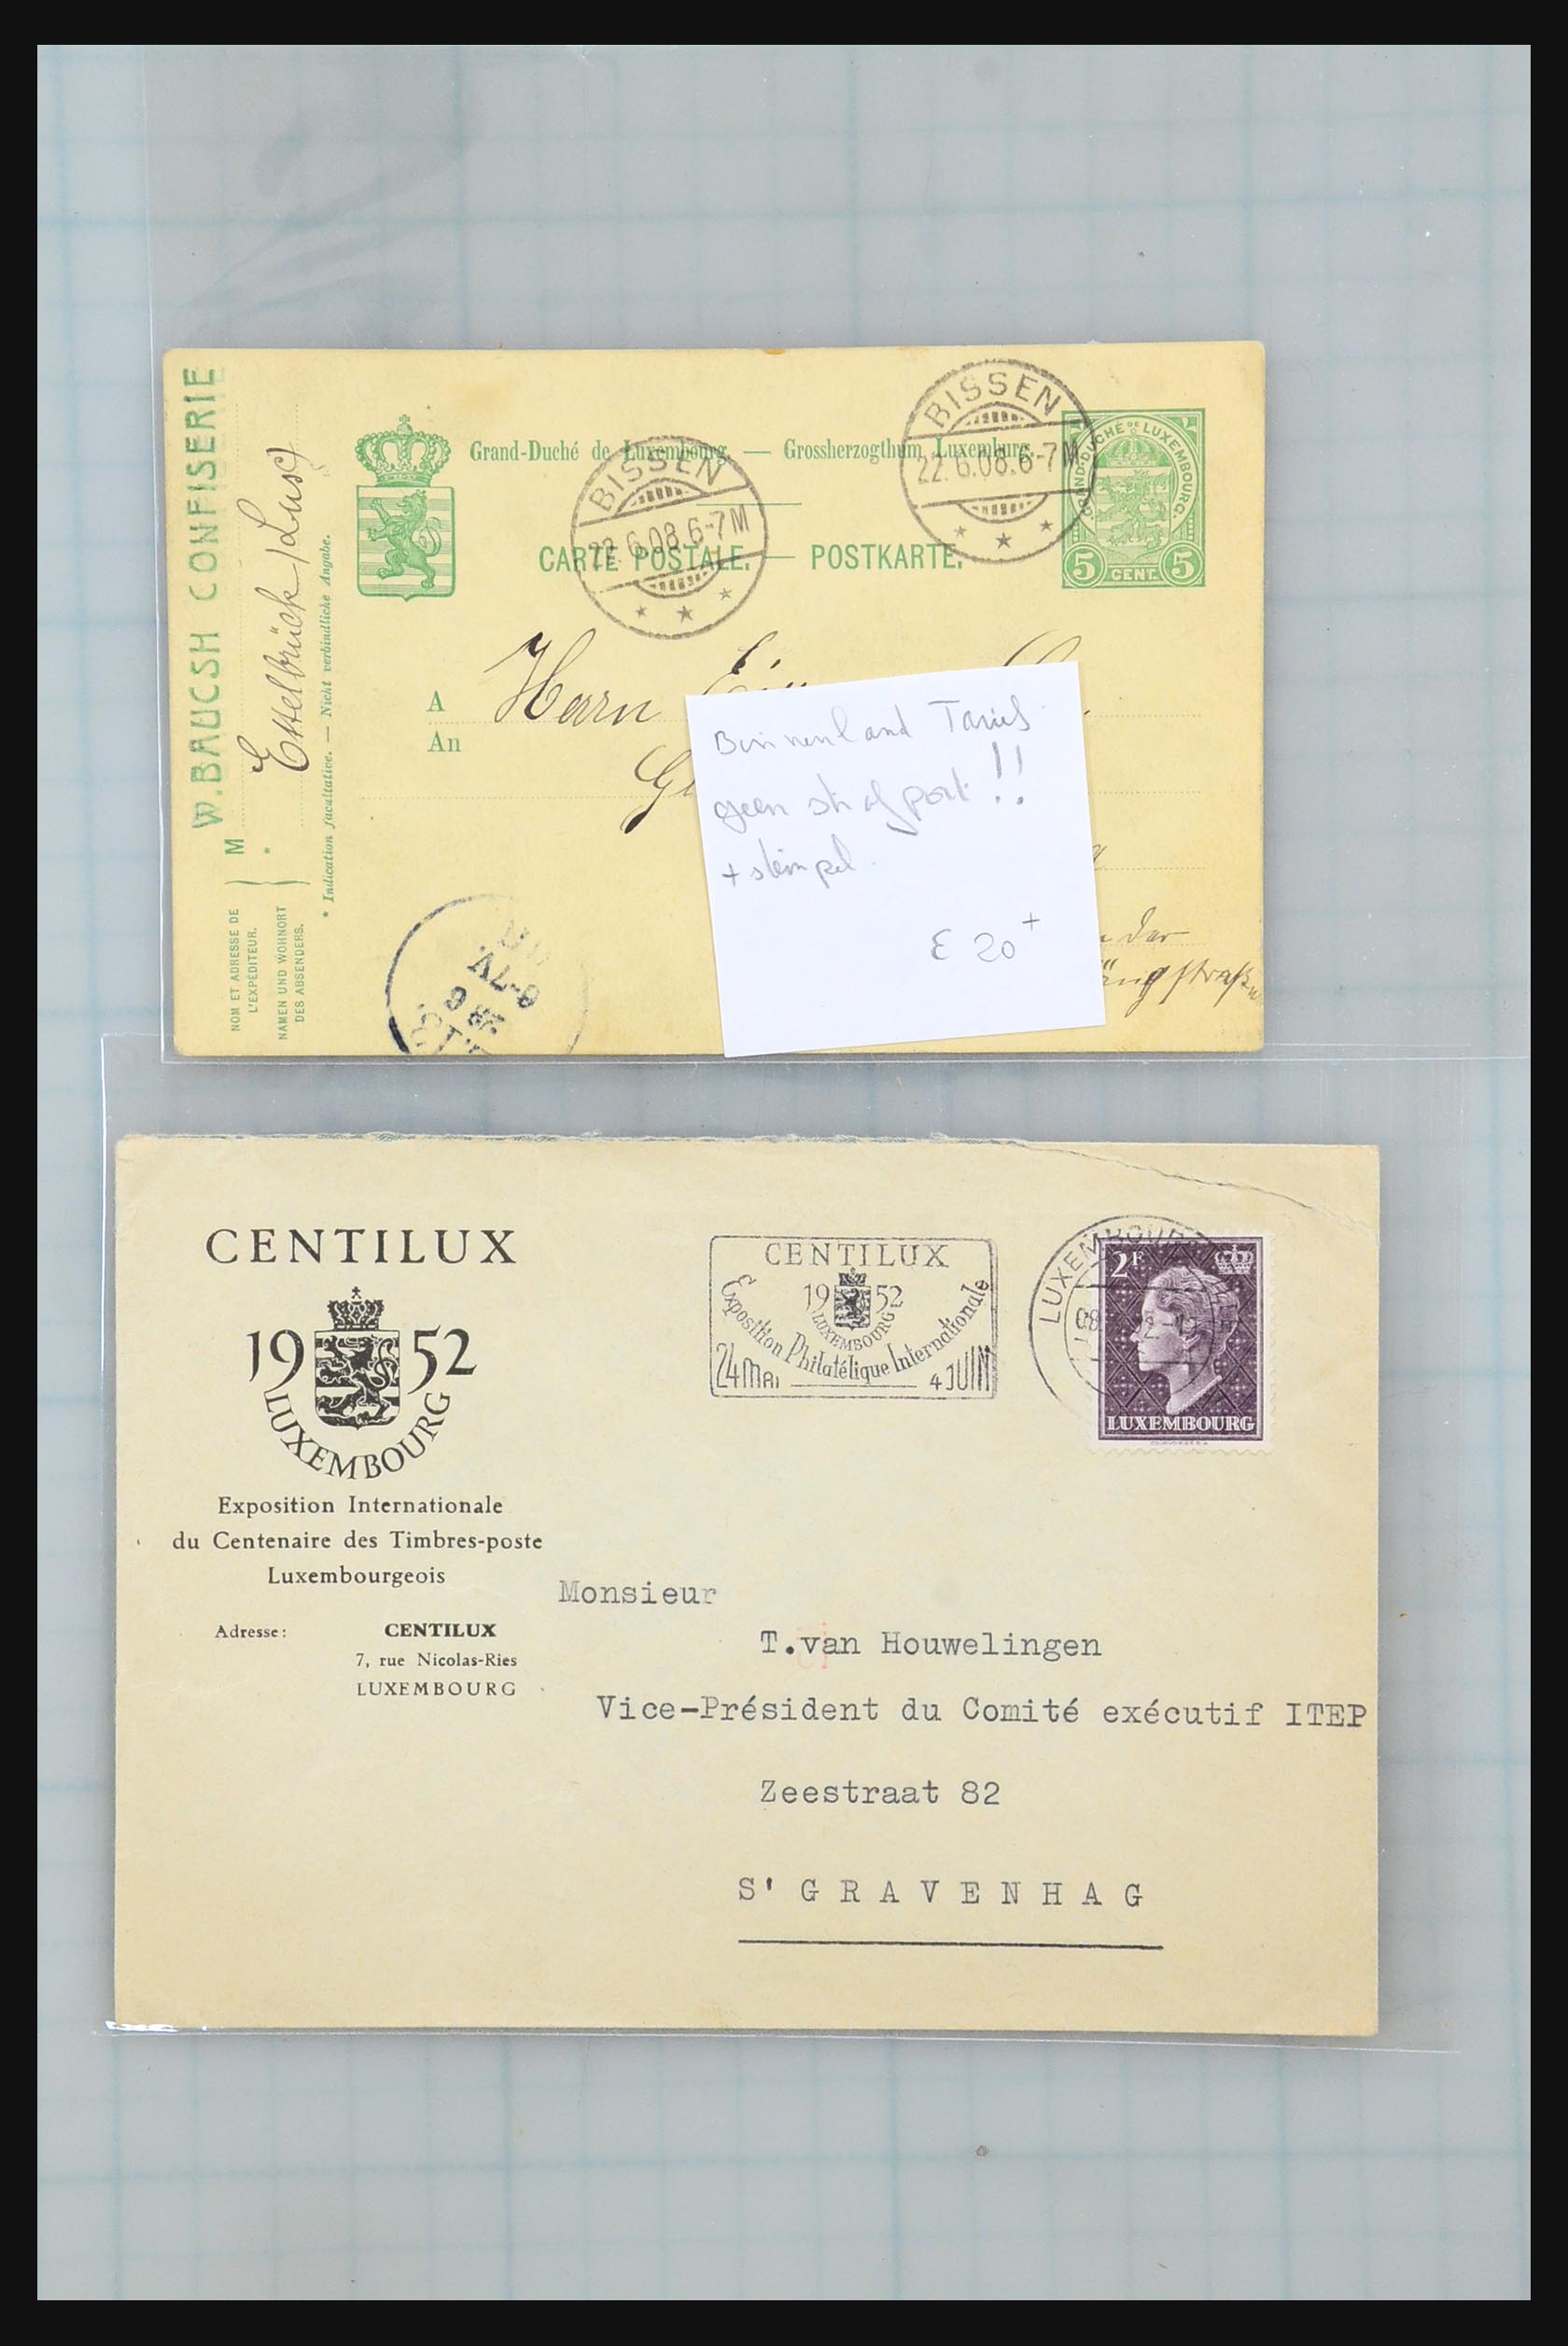 31358 072 - 31358 Portugal/Luxemburg/Griekenland brieven 1880-1960.